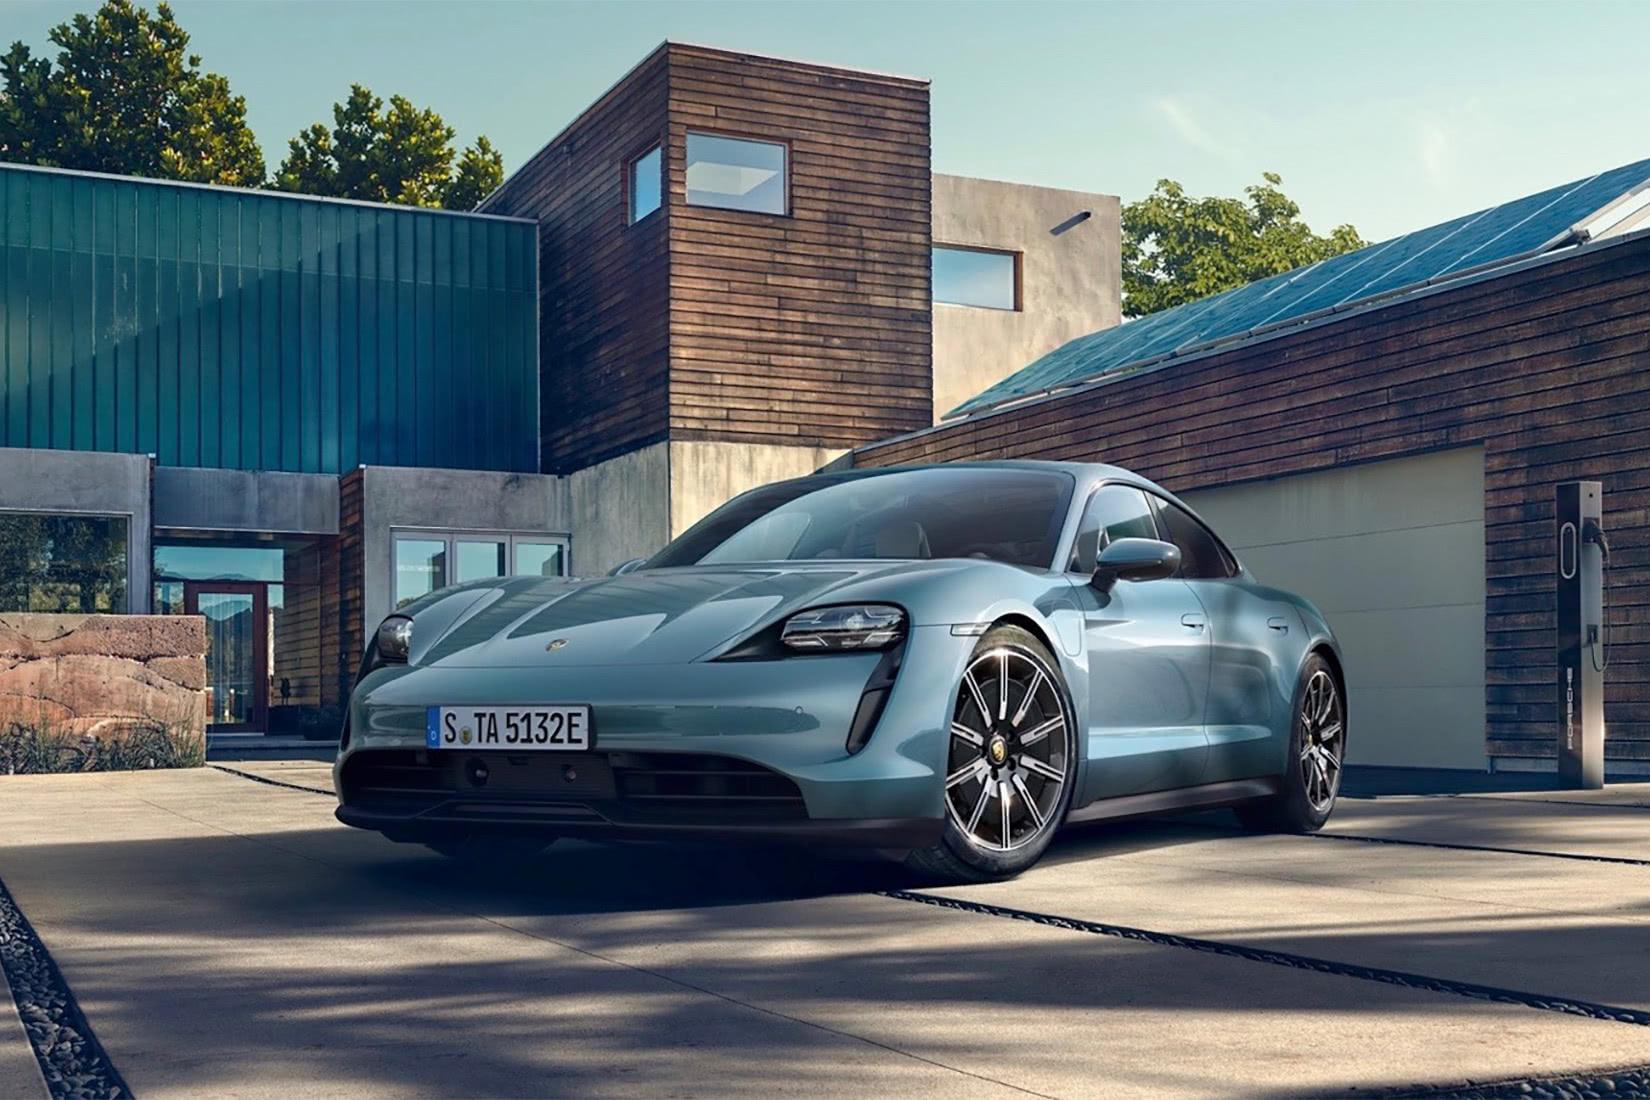 best luxury car brand Porsche - Luxe Digital